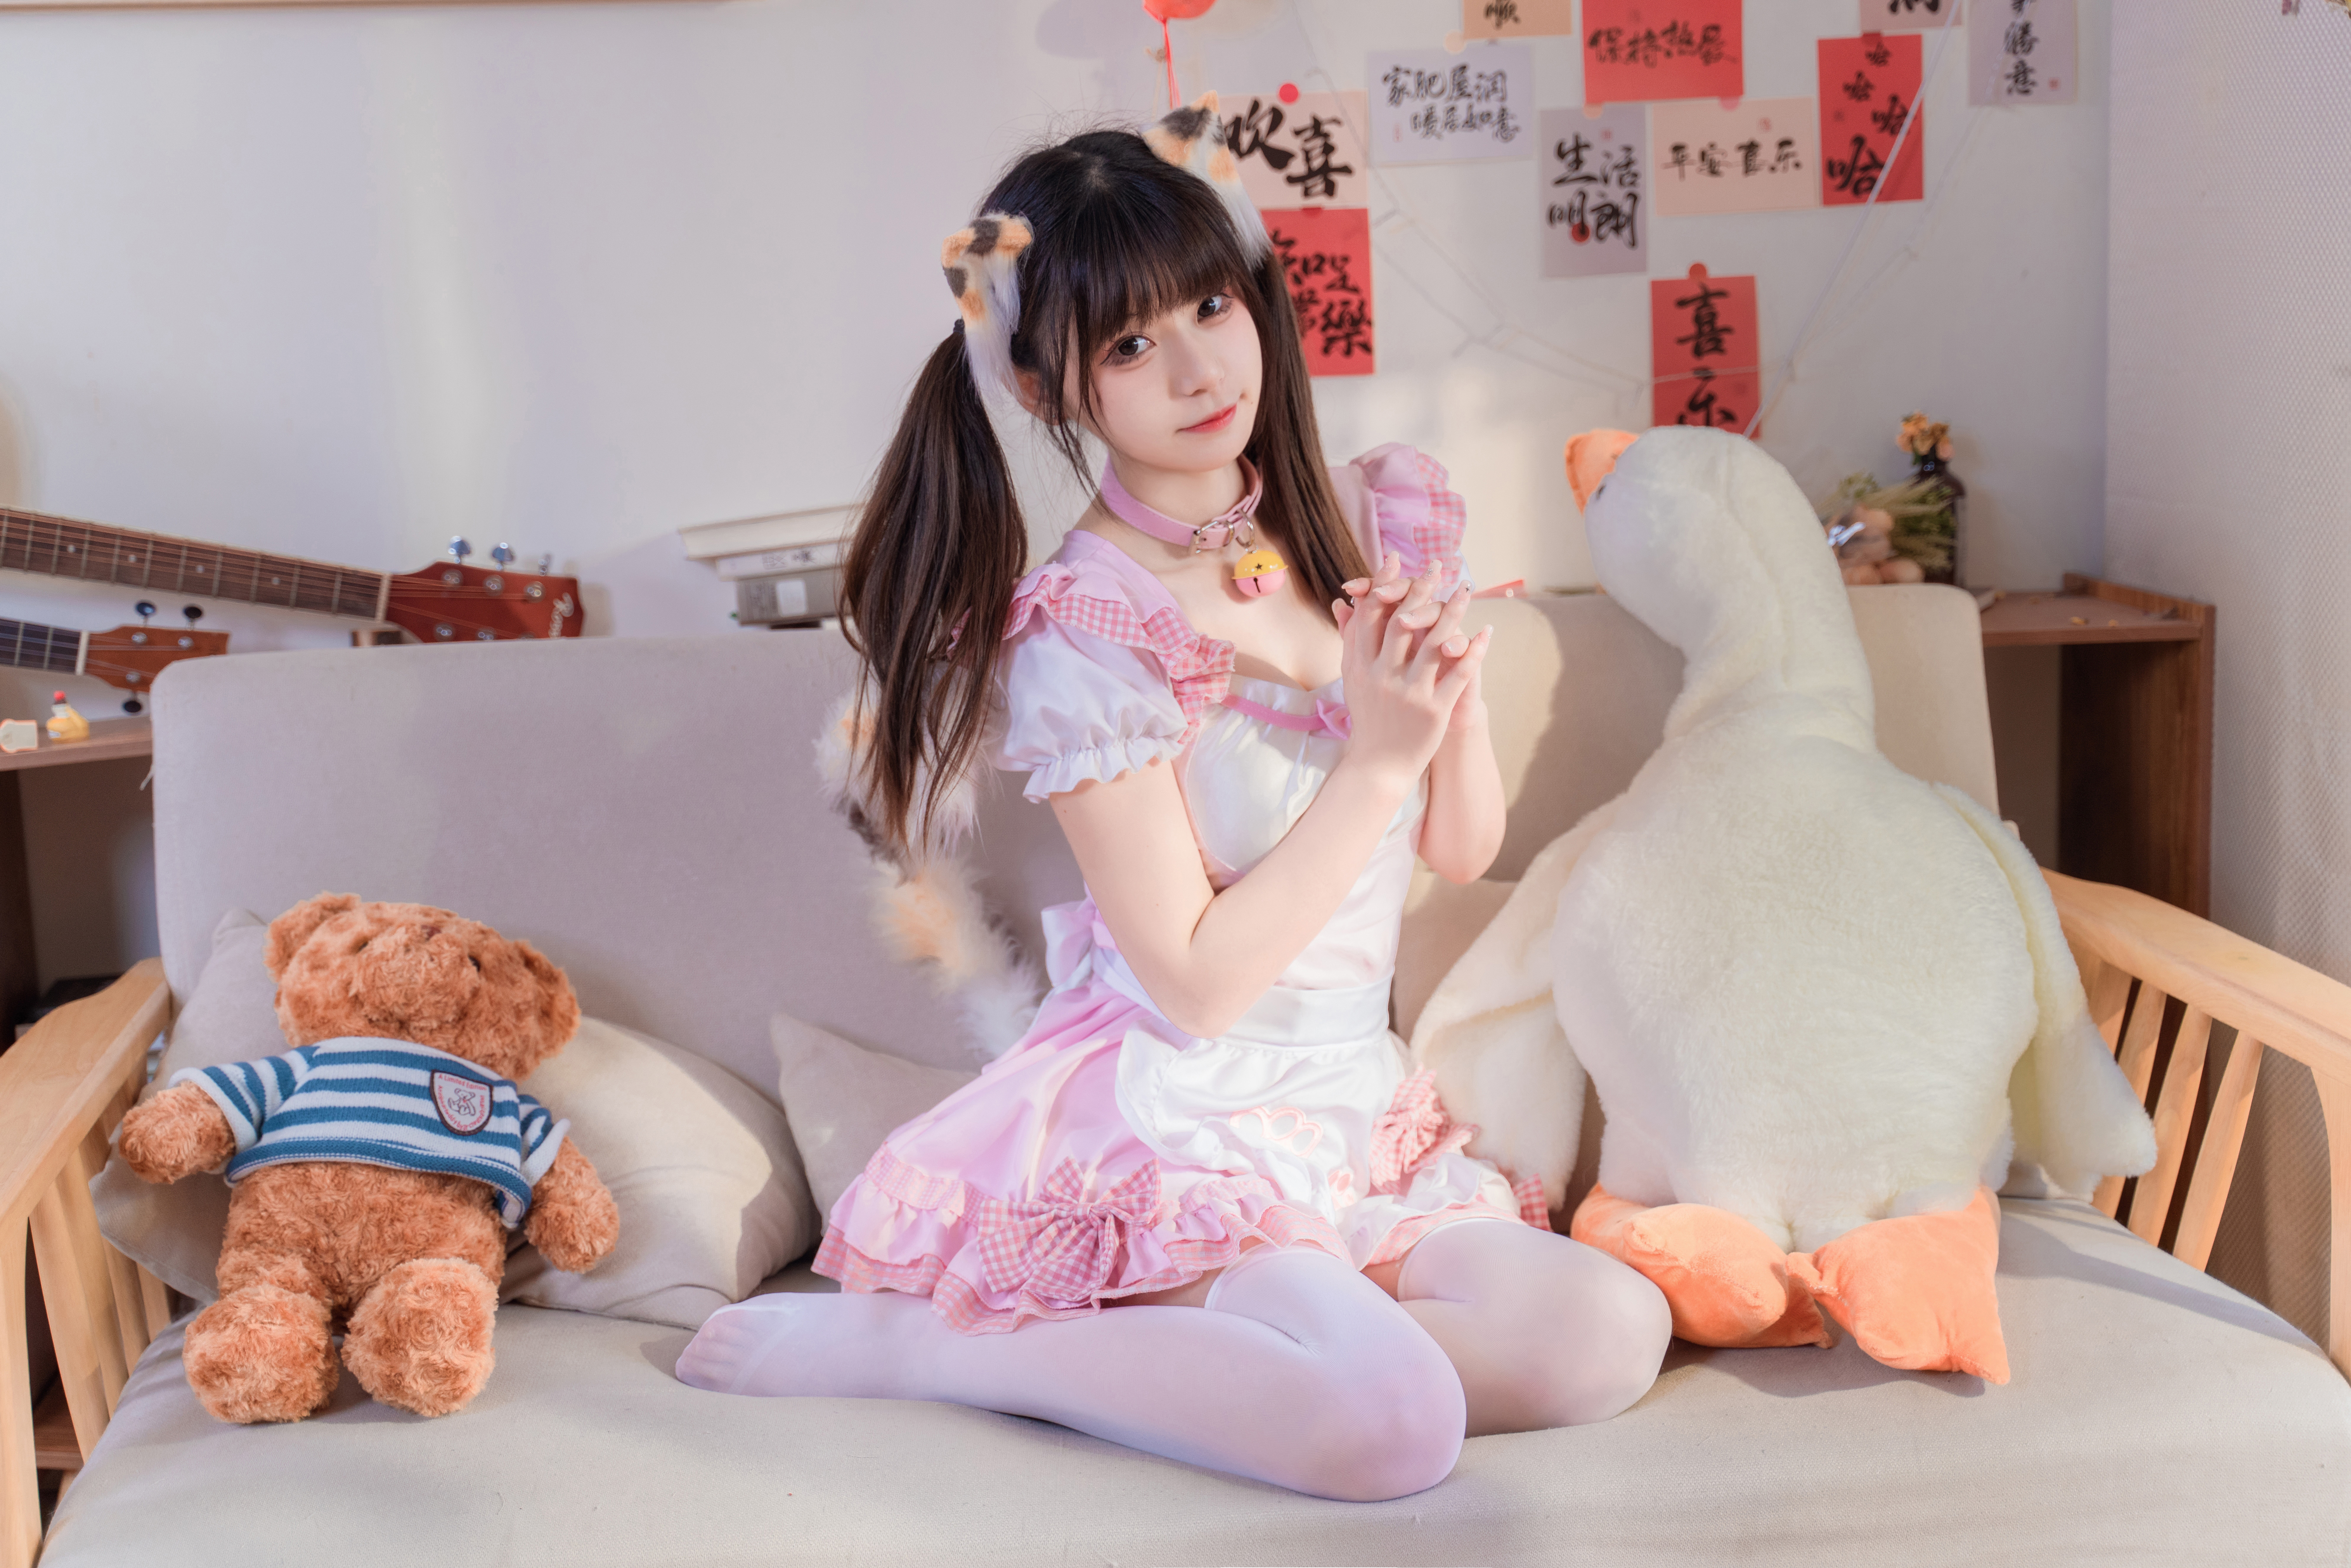 MaoDaRen Cat Girl Pink Skirt Asian 7952x5304